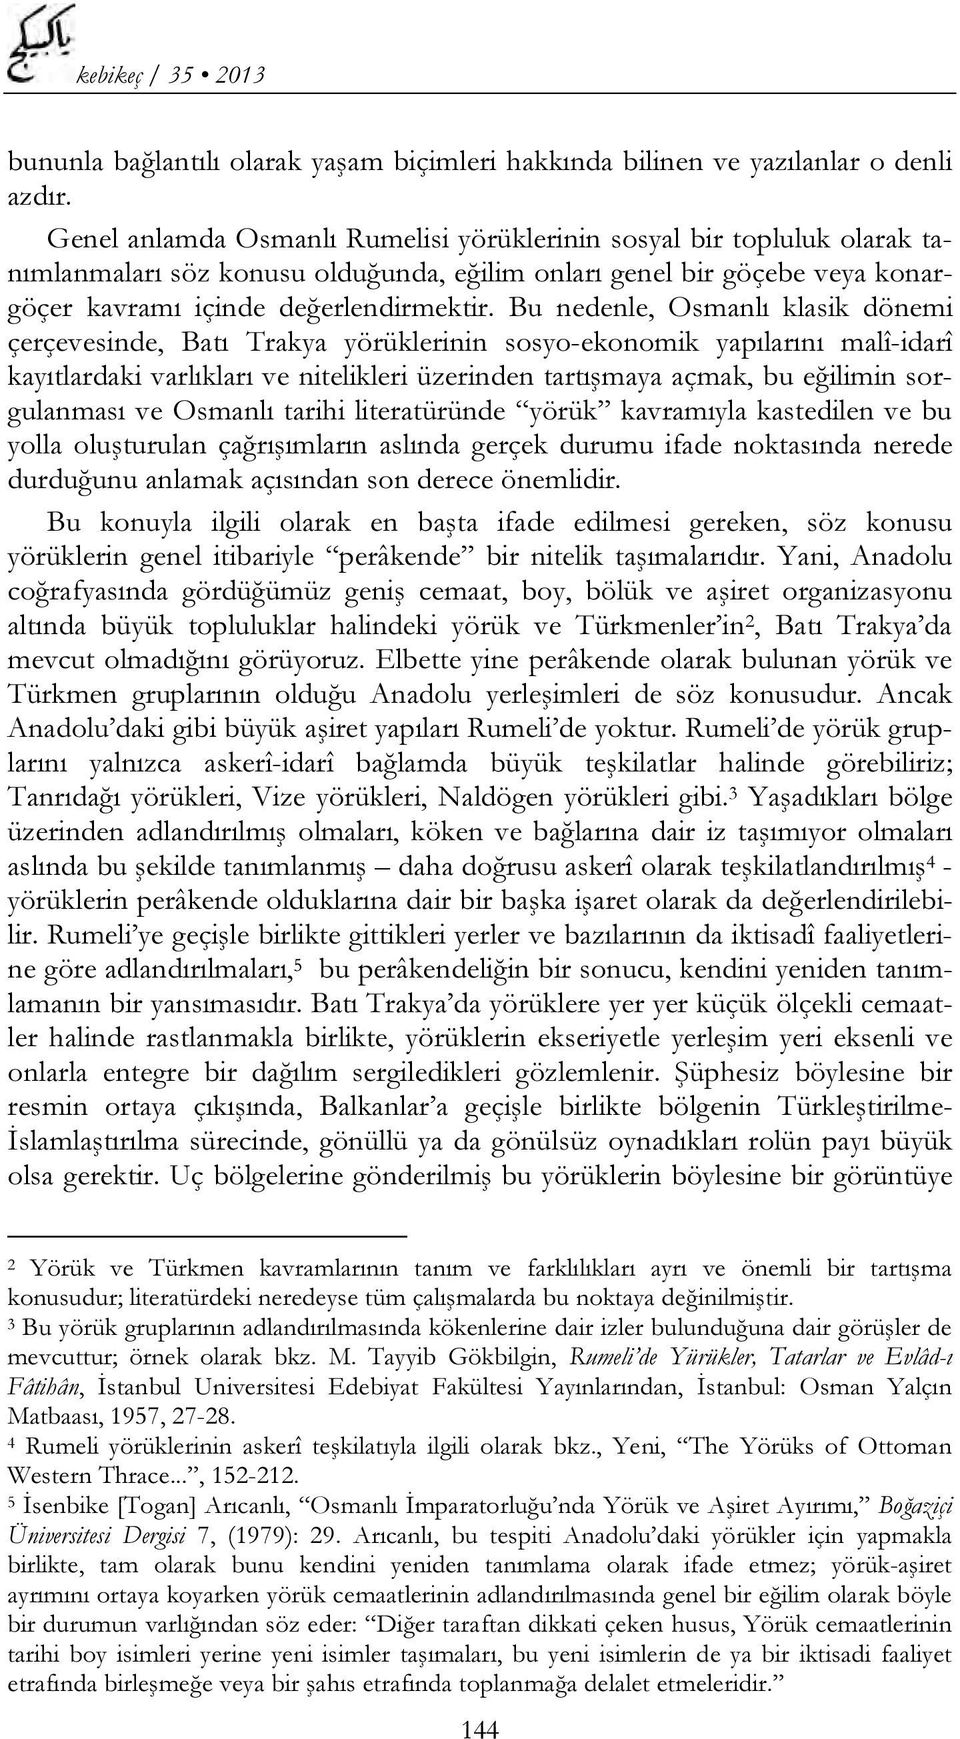 Bu nedenle, Osmanlı klasik dönemi çerçevesinde, Batı Trakya yörüklerinin sosyo-ekonomik yapılarını malî-idarî kayıtlardaki varlıkları ve nitelikleri üzerinden tartışmaya açmak, bu eğilimin